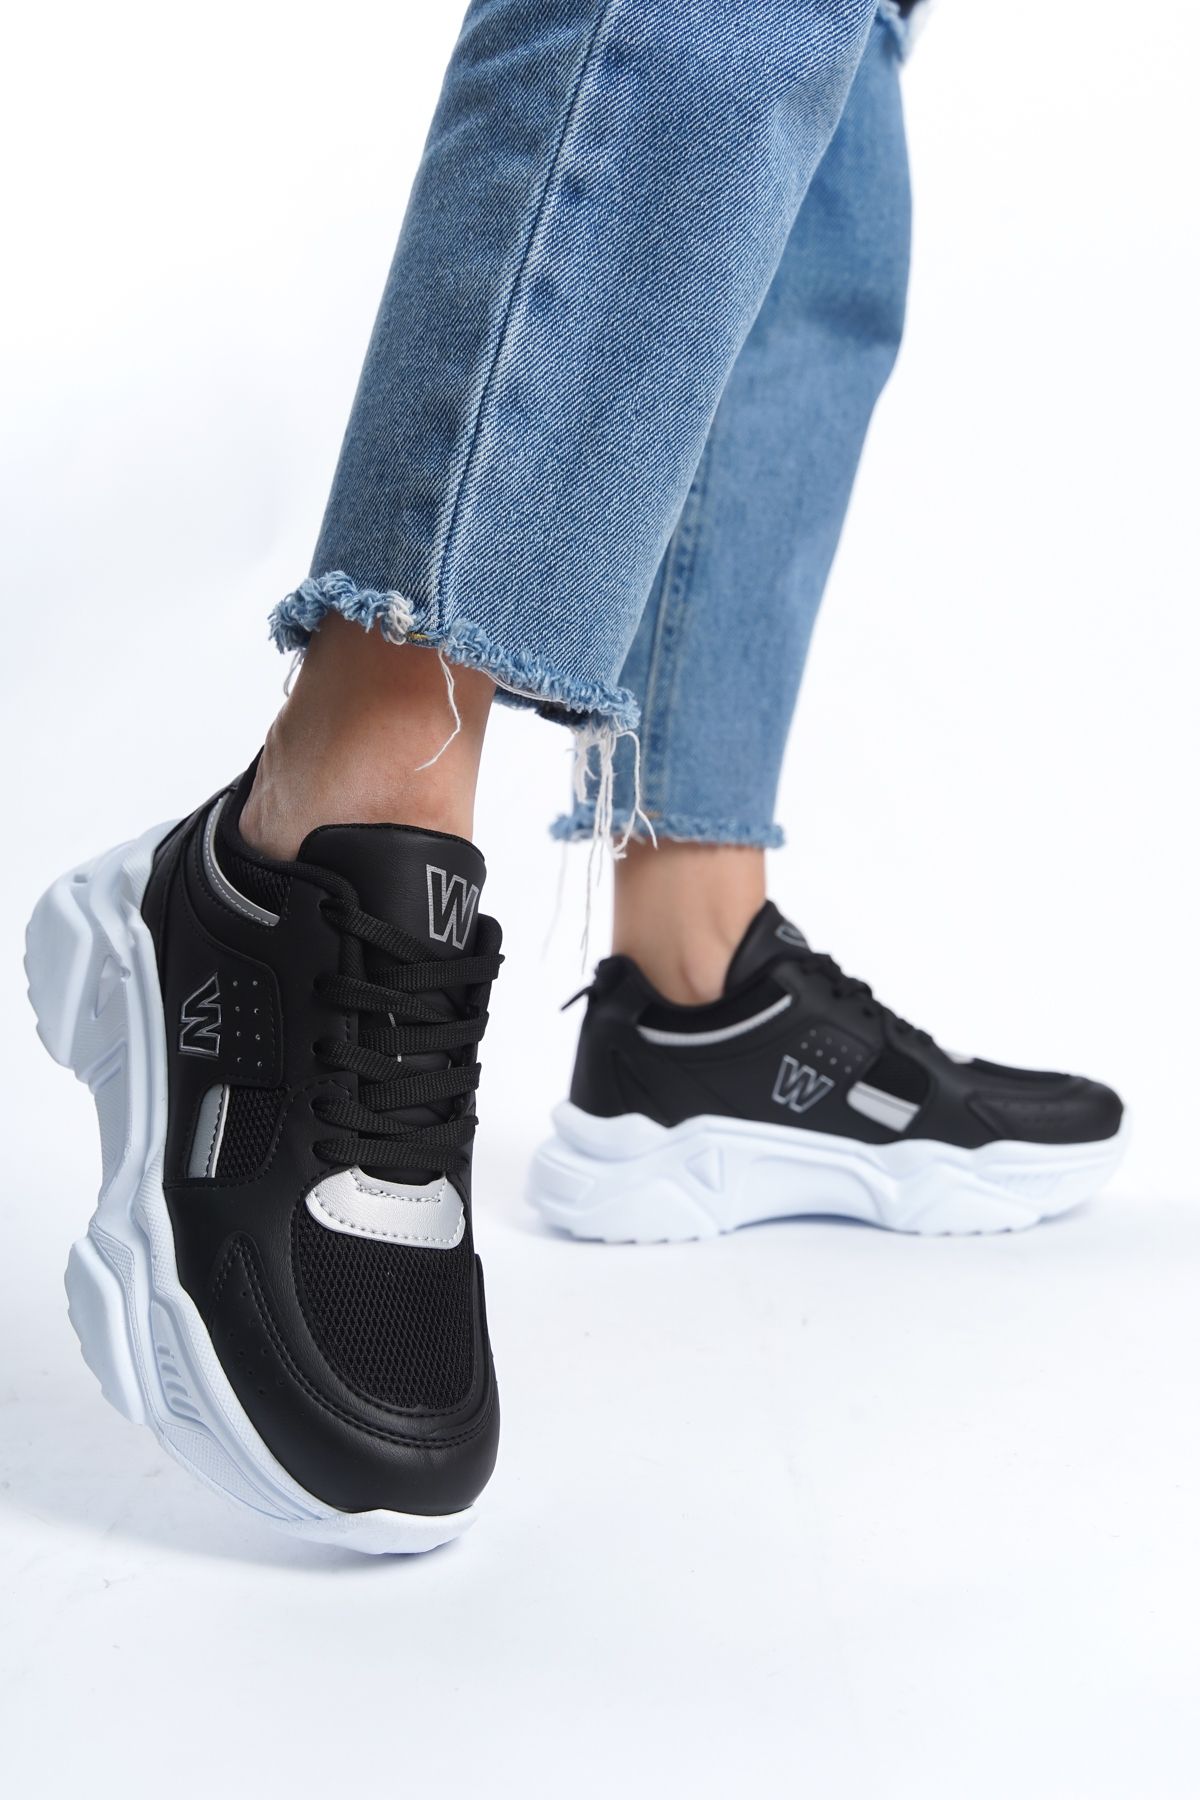 ayakkabıhavuzu Kadın Siyah Bağcıklı Günlük Rahat Tarz Taban Sneaker